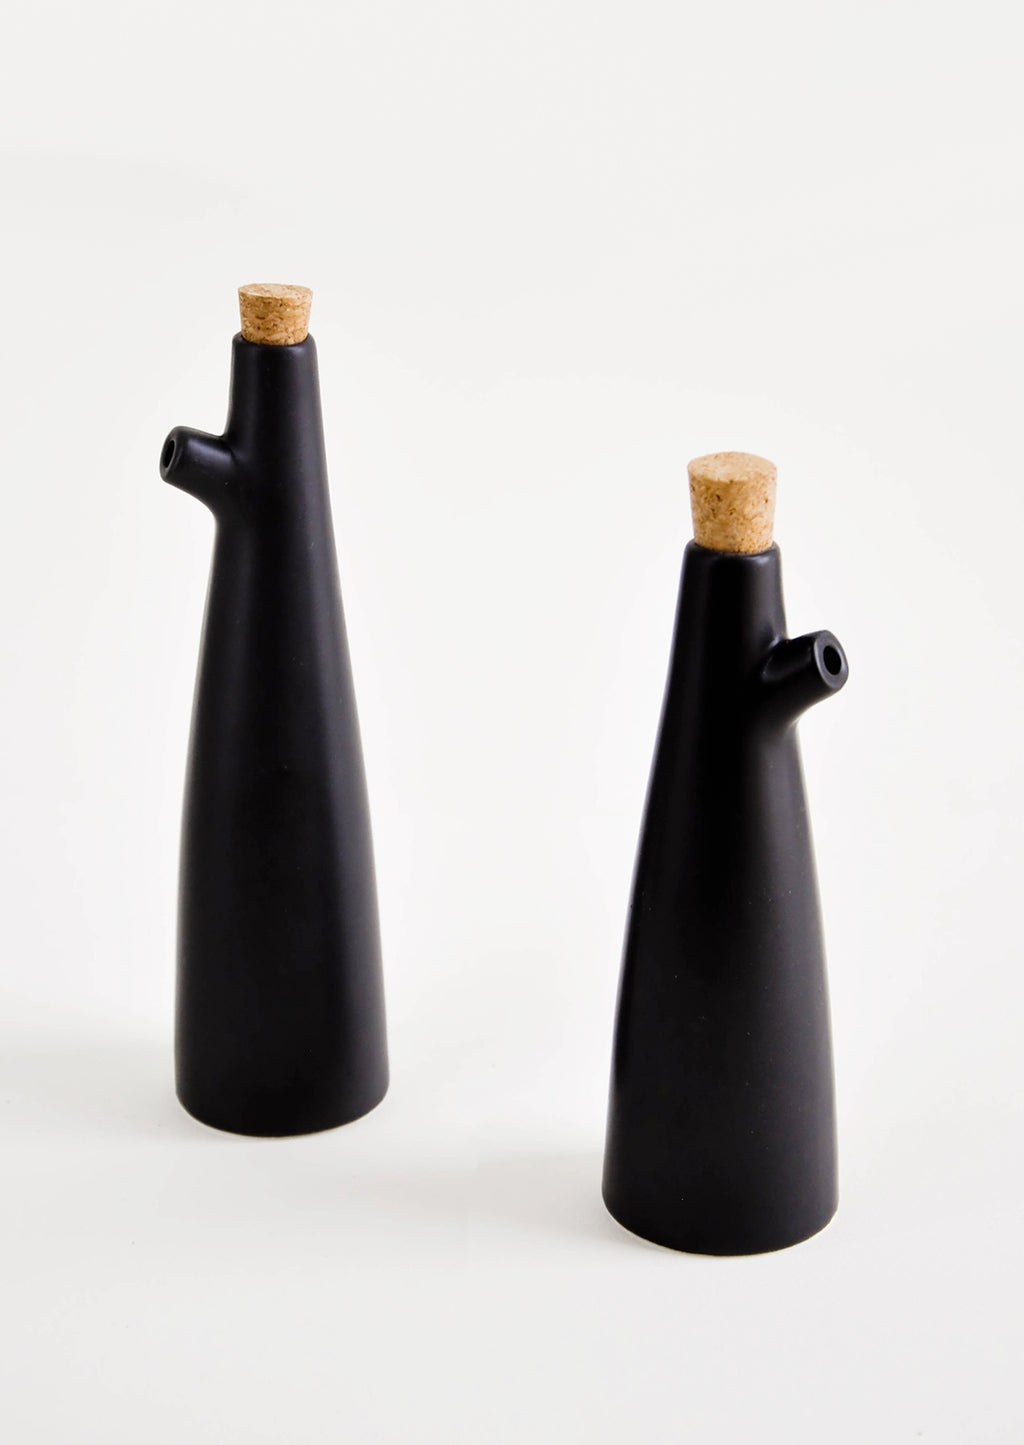 Small / Black: Ceramic cruets for oil & vinegar, one taller than the other. Matte black glaze, cork stopper as lid.